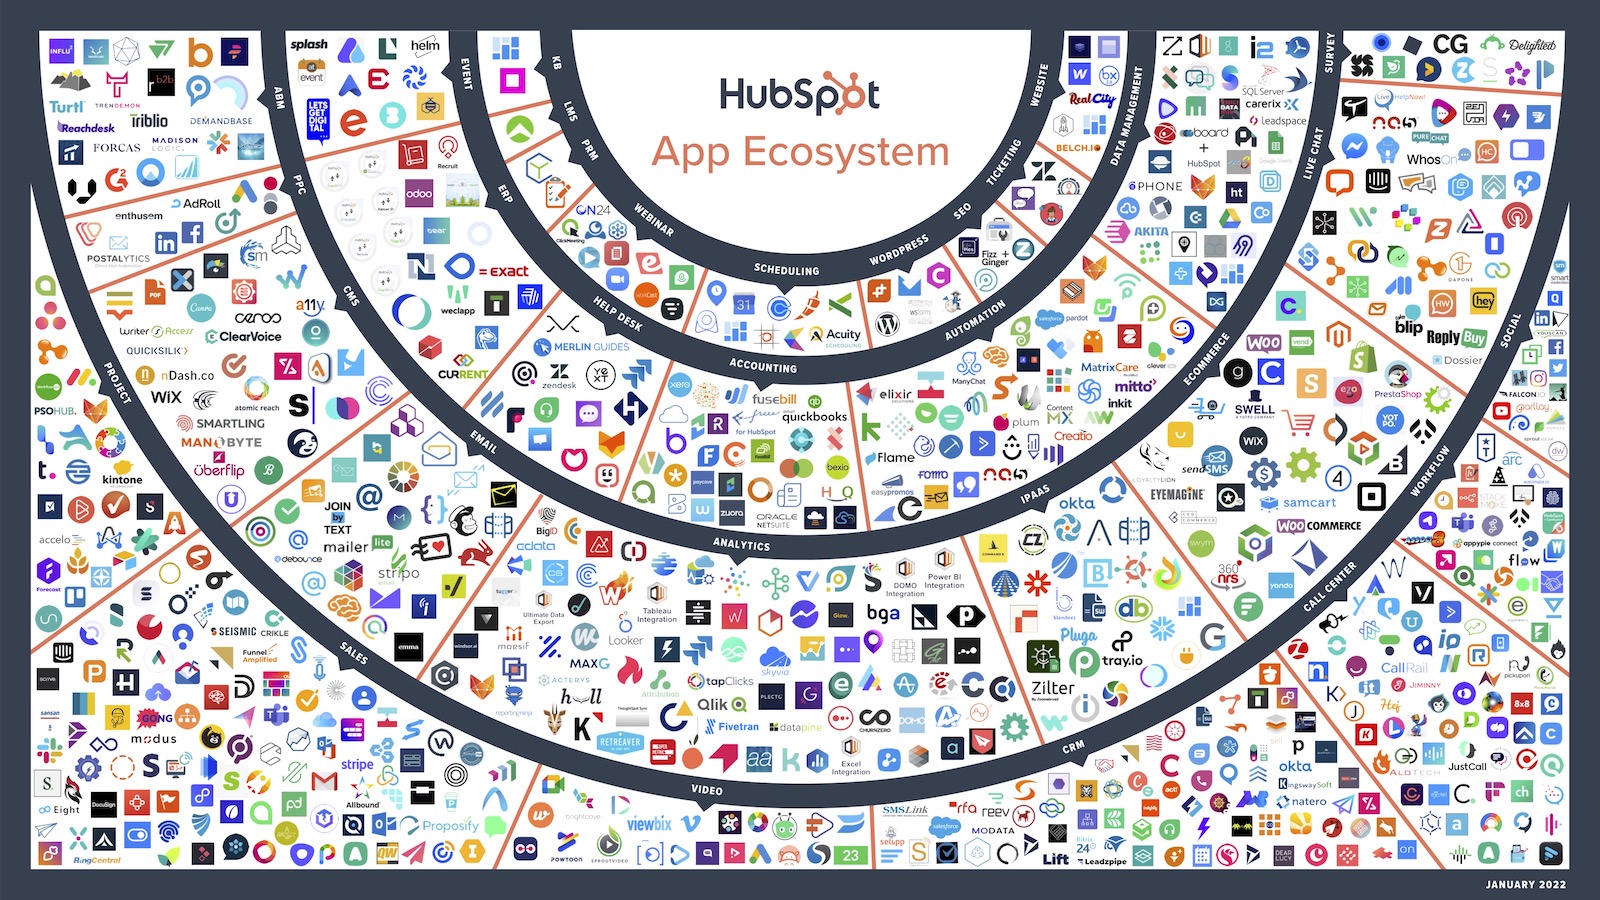 HubSpot App Ecosystem (January 2022)